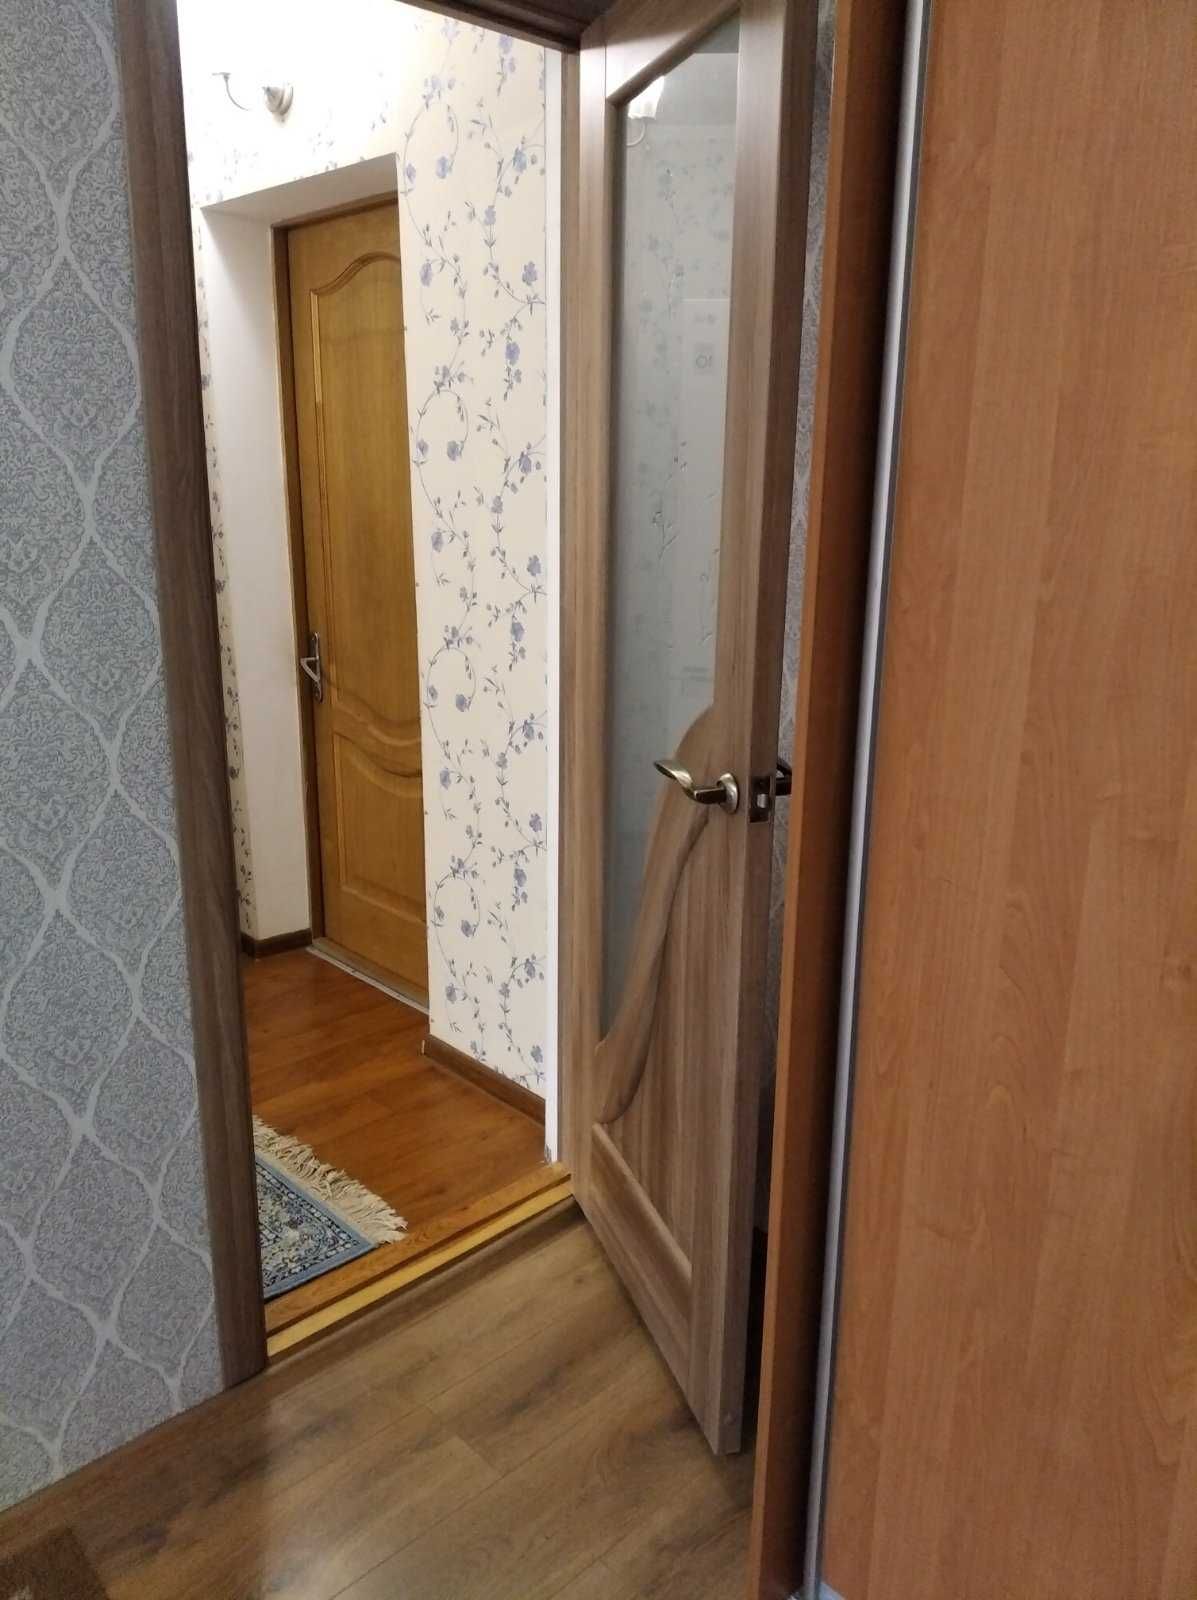 Продам 2 комнаты с ремонтом и бытовой техникой за мин деньги в Одессе